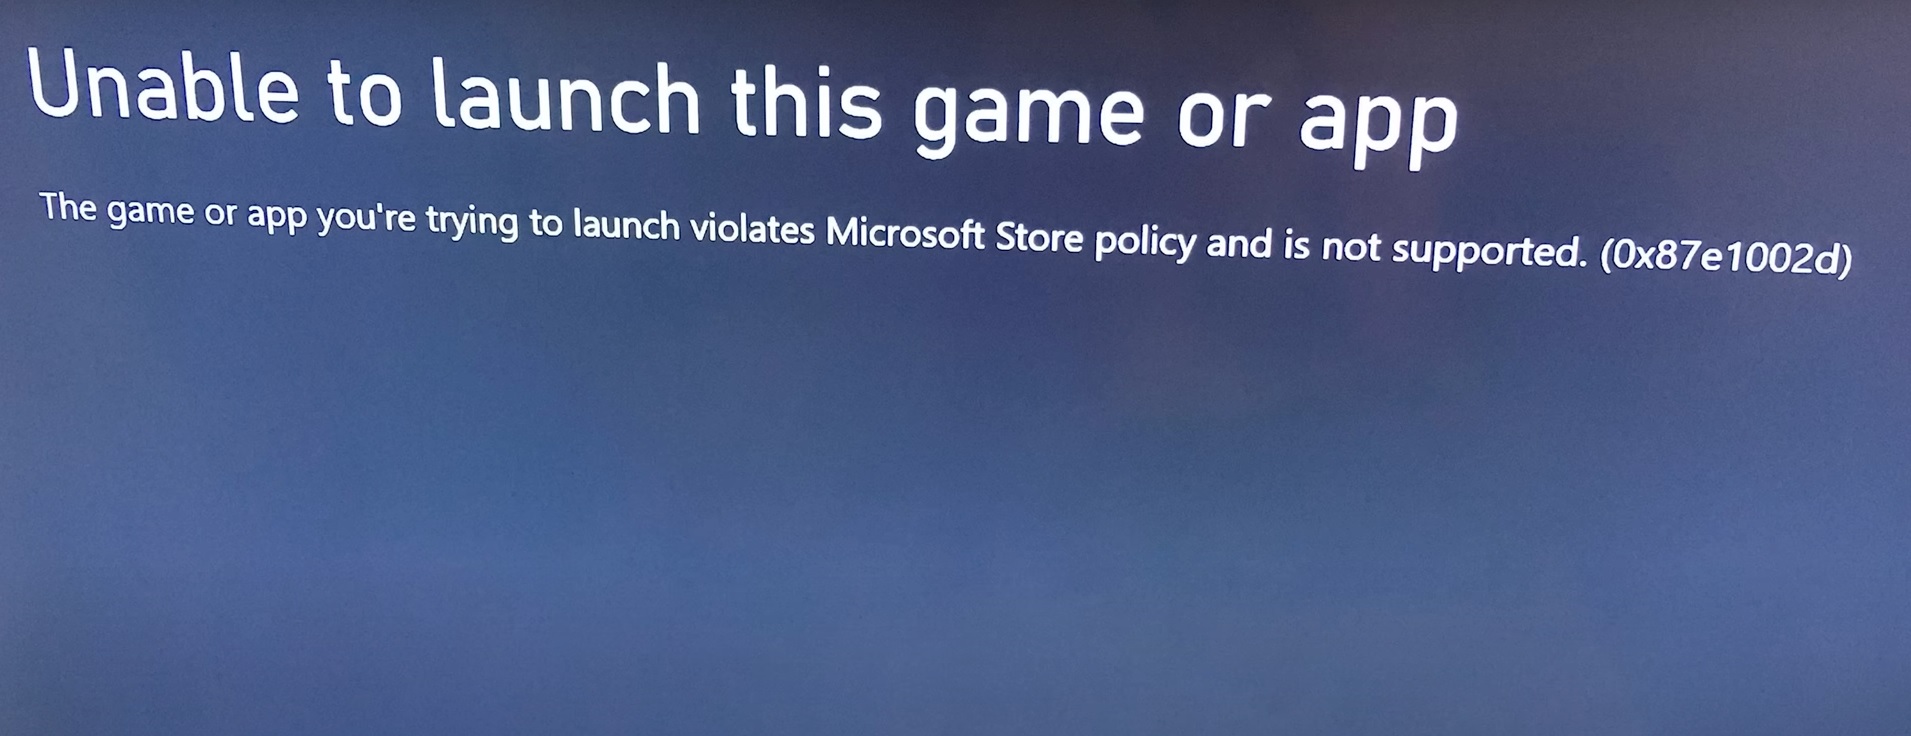 Xbox messaggio emulazione non consentita